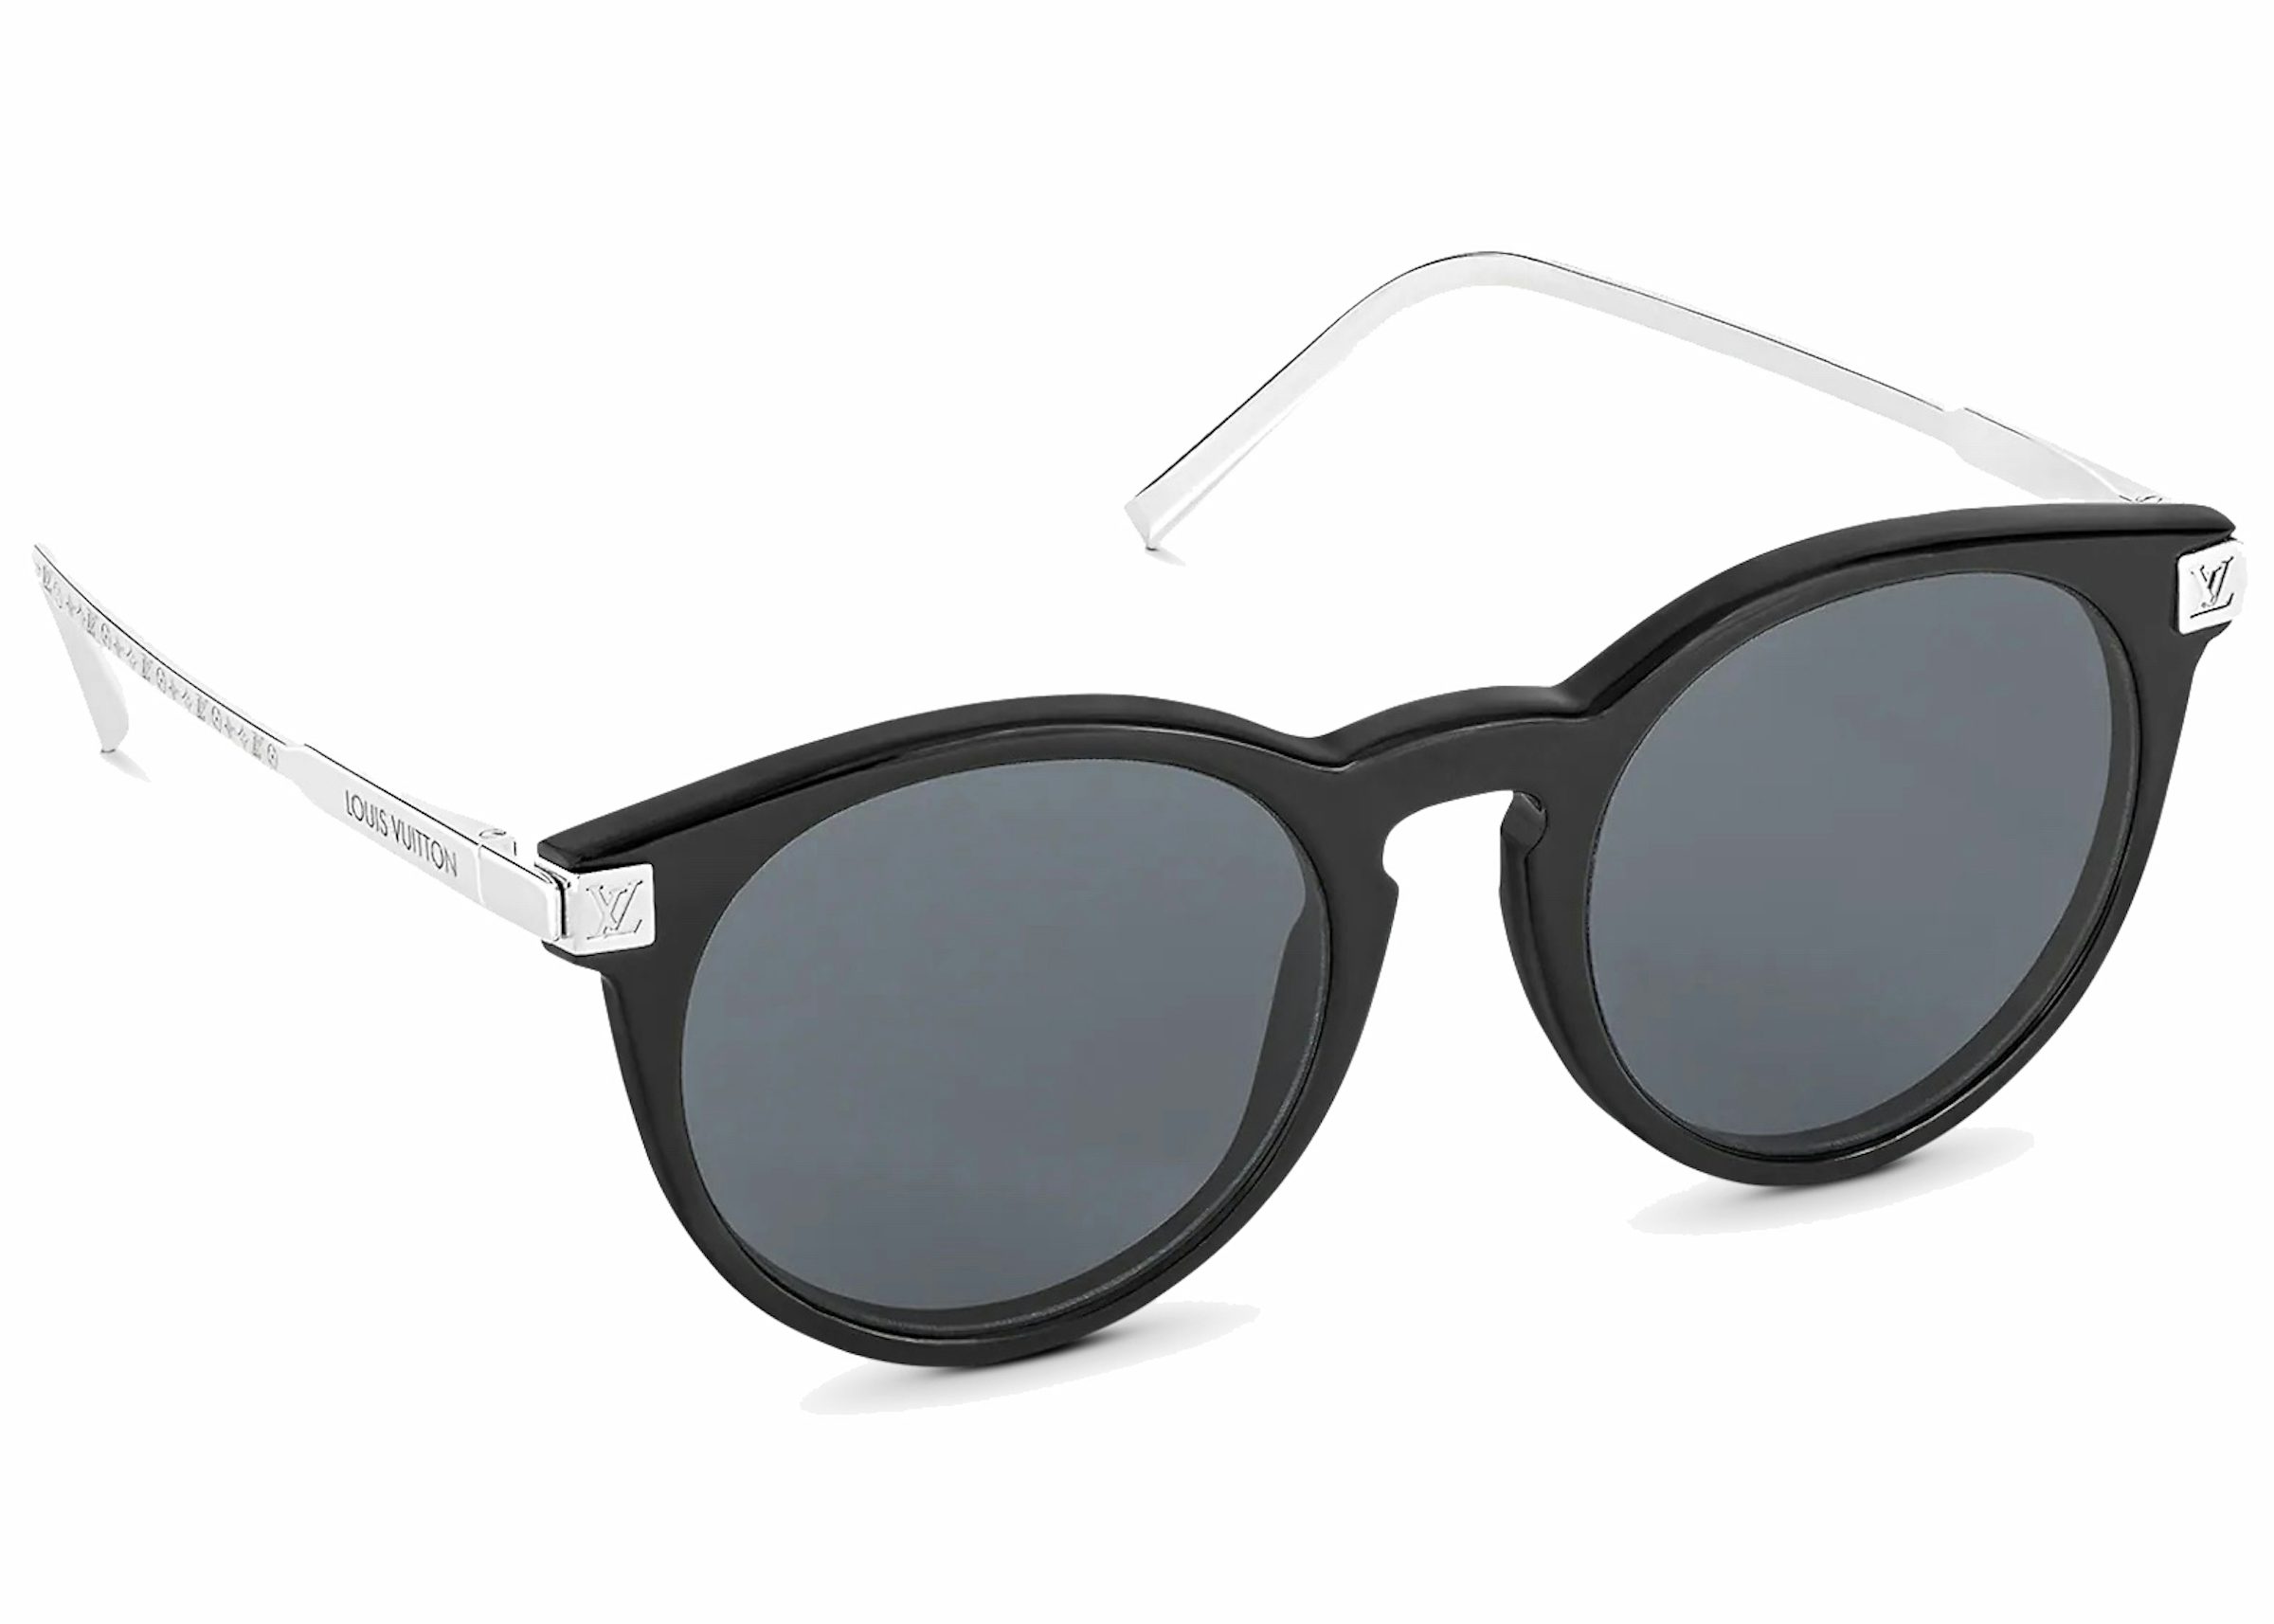 Louis Vuitton 1.1 Evidence Sunglasses - MEN - Accessories Z1682E